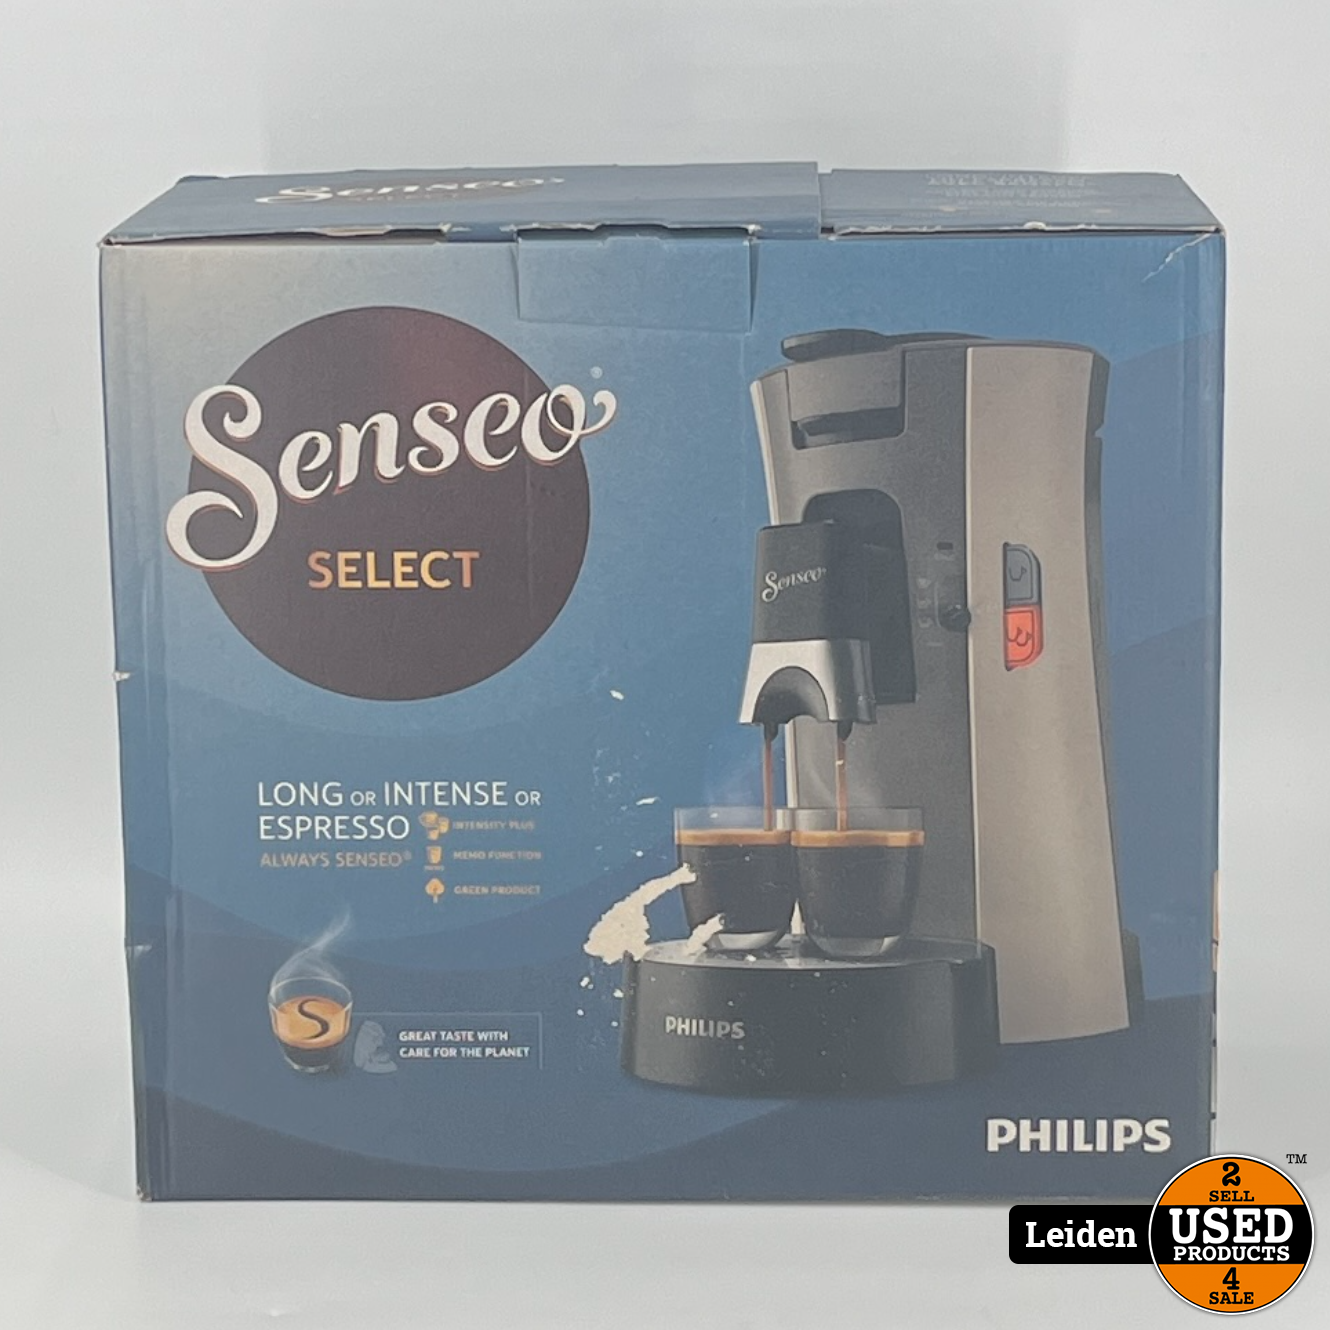 CSA240/30 Senseo Select Koffiepadmachine Beige/Grijs (NIEUW uit doos) Used Products